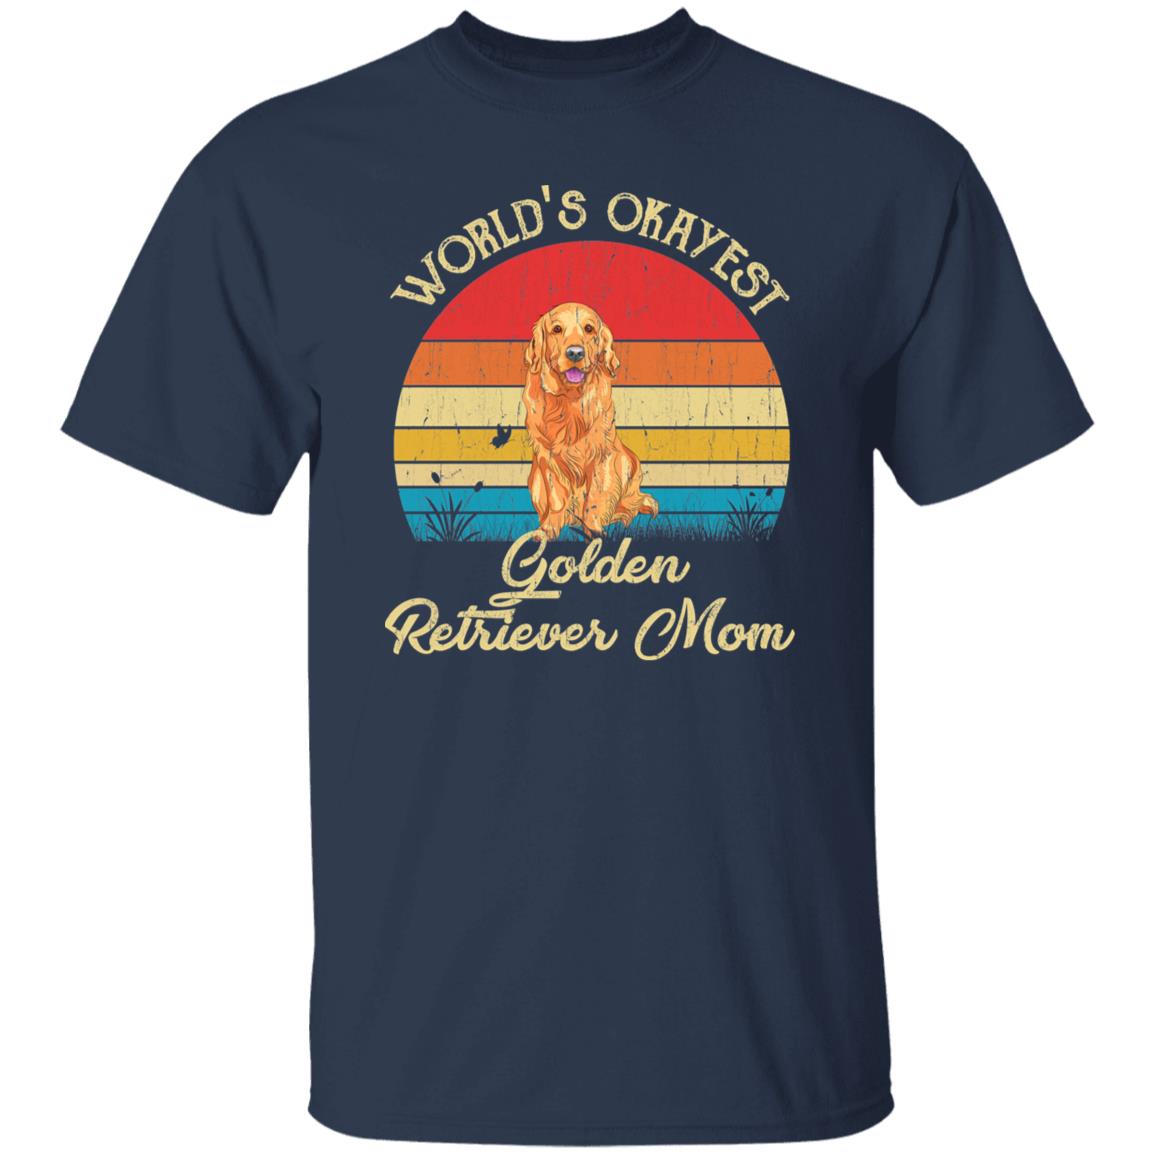 World's Okayest Golden retriever mom Retro Style Unisex T-shirt Black Navy Dark Heather-Navy-Family-Gift-Planet